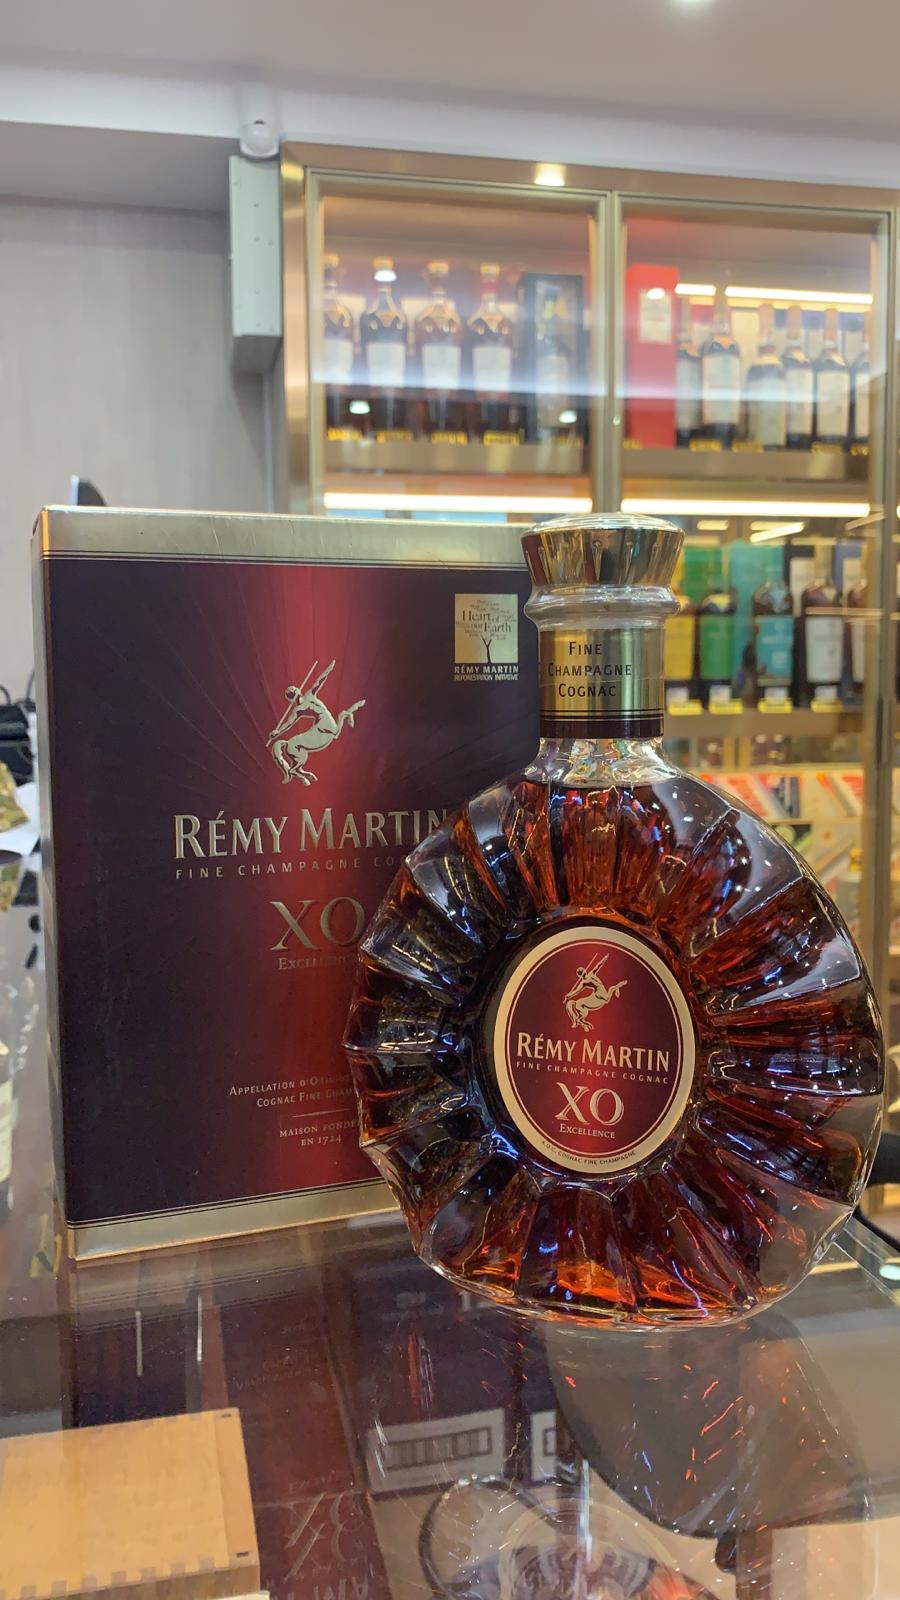 Remy Martin XO Excellence Cognac 70cl/40%